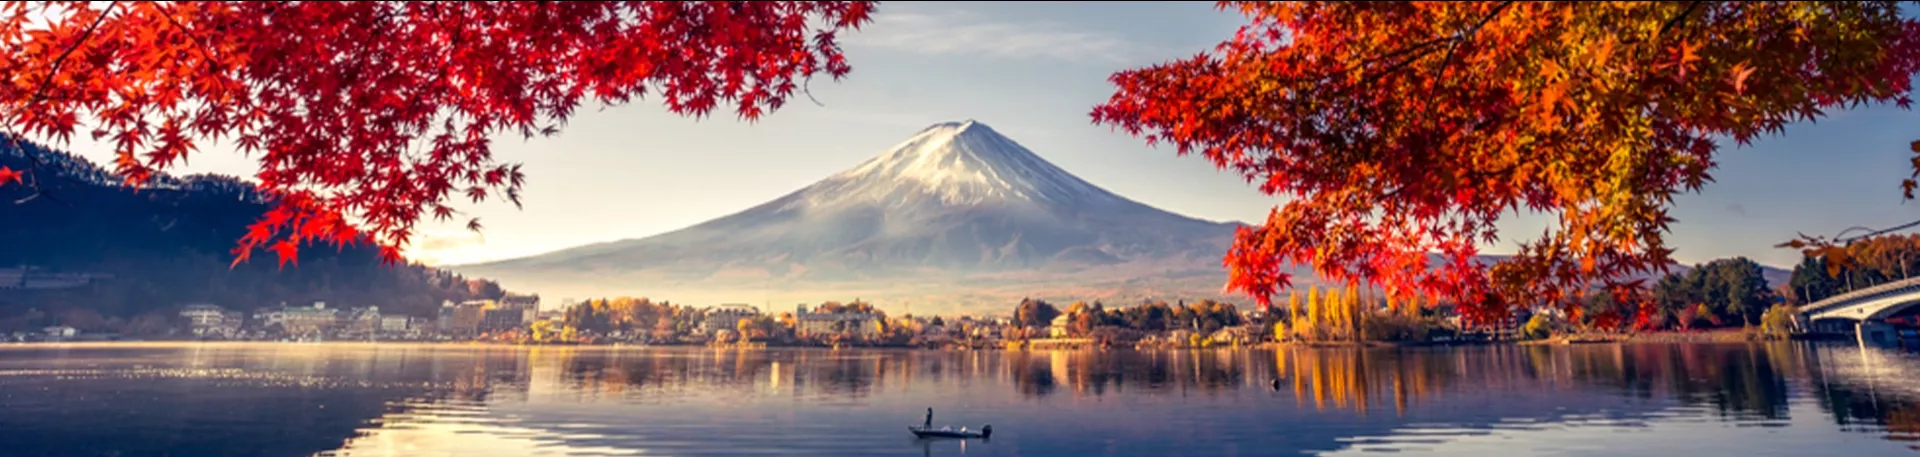 Japan herfstseizoen Mount Fuji